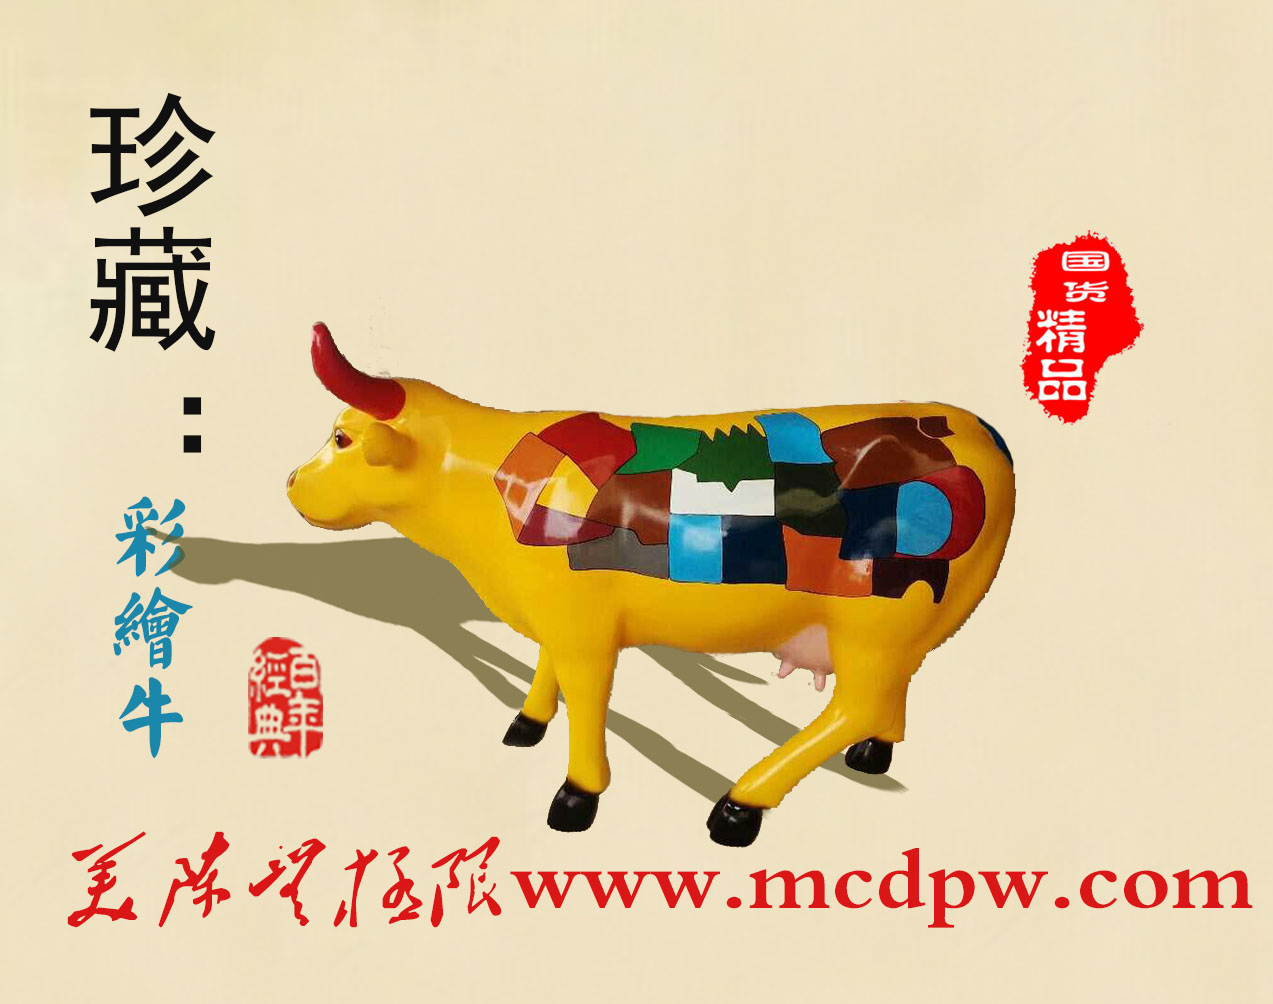 吉祥物牛雕塑模型、彩绘牛、卡通牛雕塑、广场展览雕塑道具牛